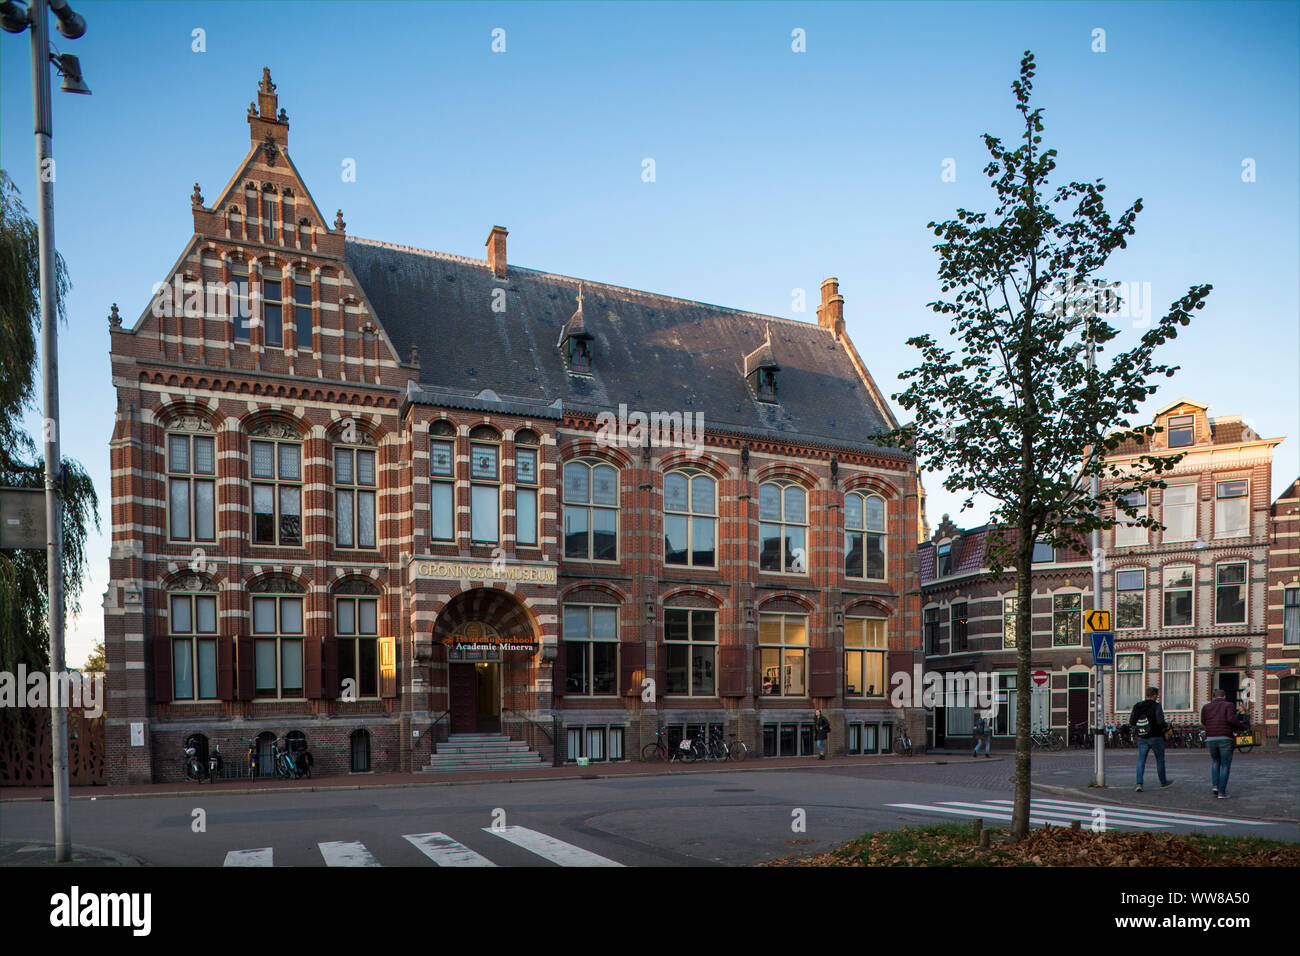 Netherlands, Groningen, Academie Minerva - Faculty of Art, Design and Pop Culture Stock Photo